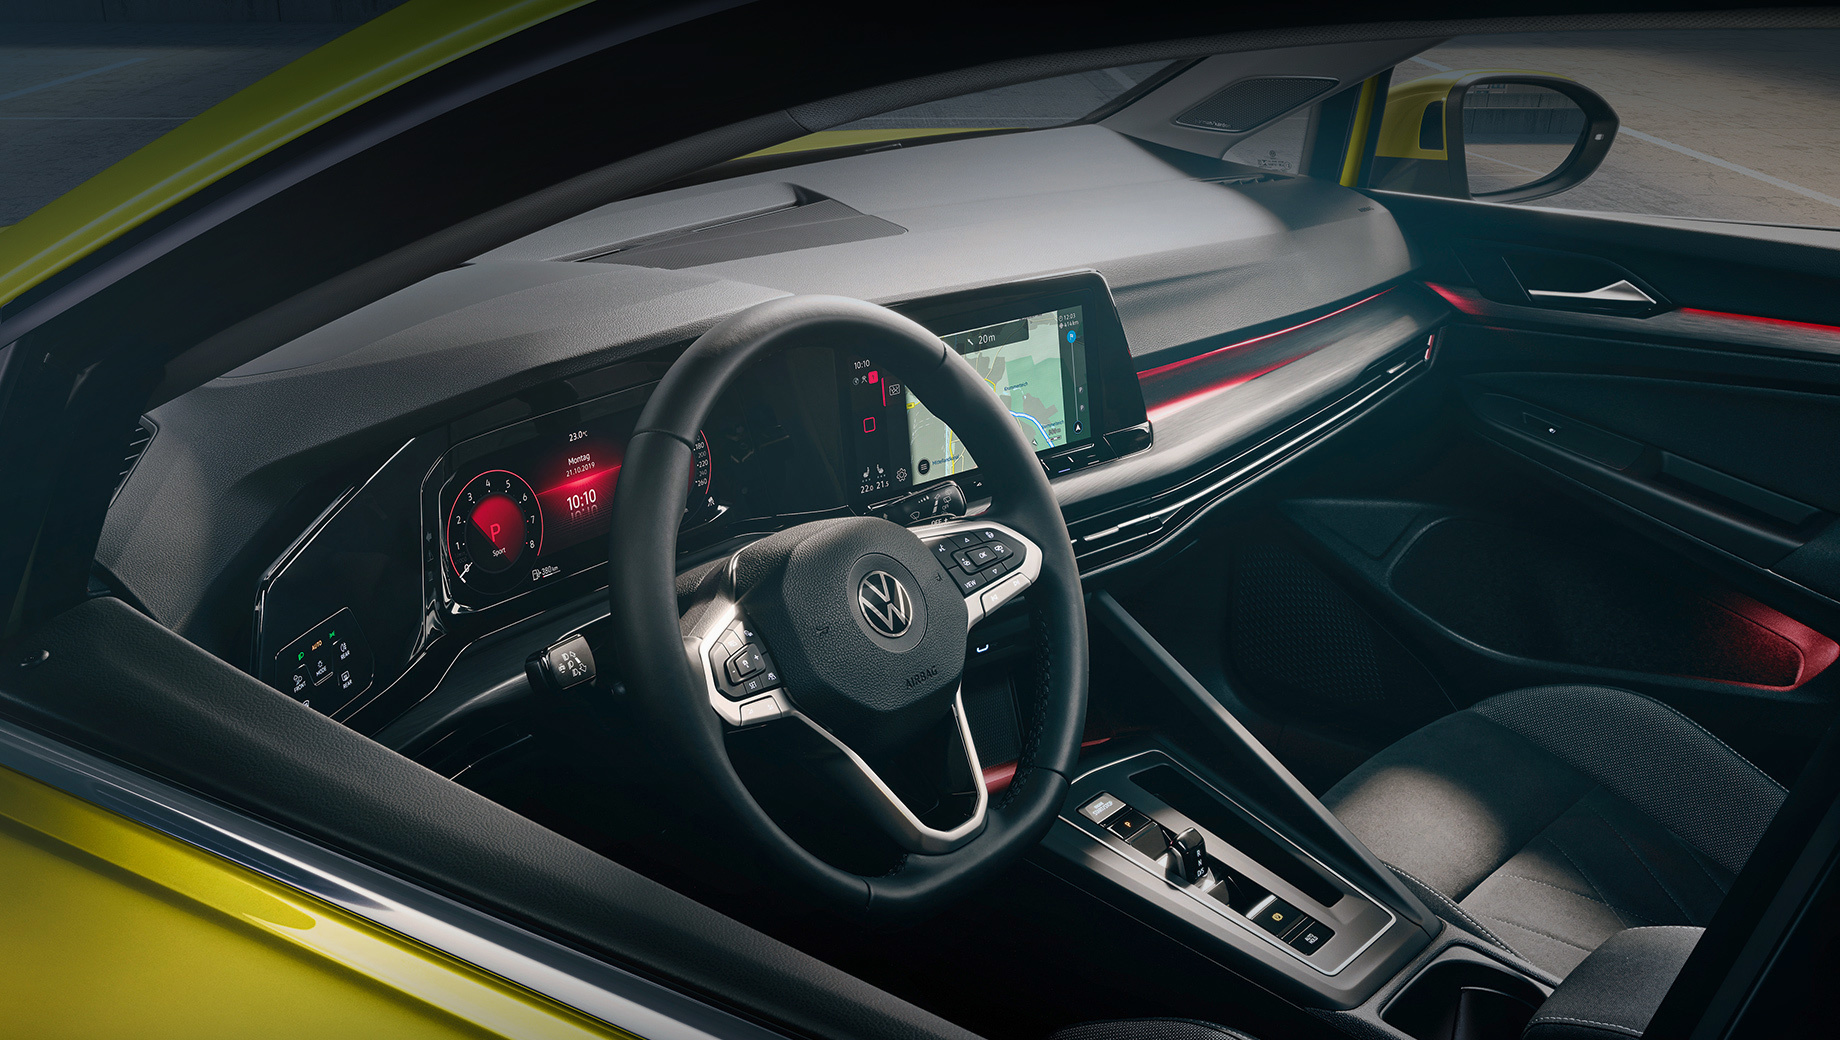 Volkswagen golf,Skoda octavia,Seat leon,Audi a3. Согласно директиве Евросоюза, с 31 марта 2018 года все новые модели должны иметь оборудование для экстренных вызовов. Volkswagen обнаружил, что модуль связи Гольфа «может не обеспечивать надёжную передачу данных», и с середины мая остановил выдачу хэтчей клиентам.